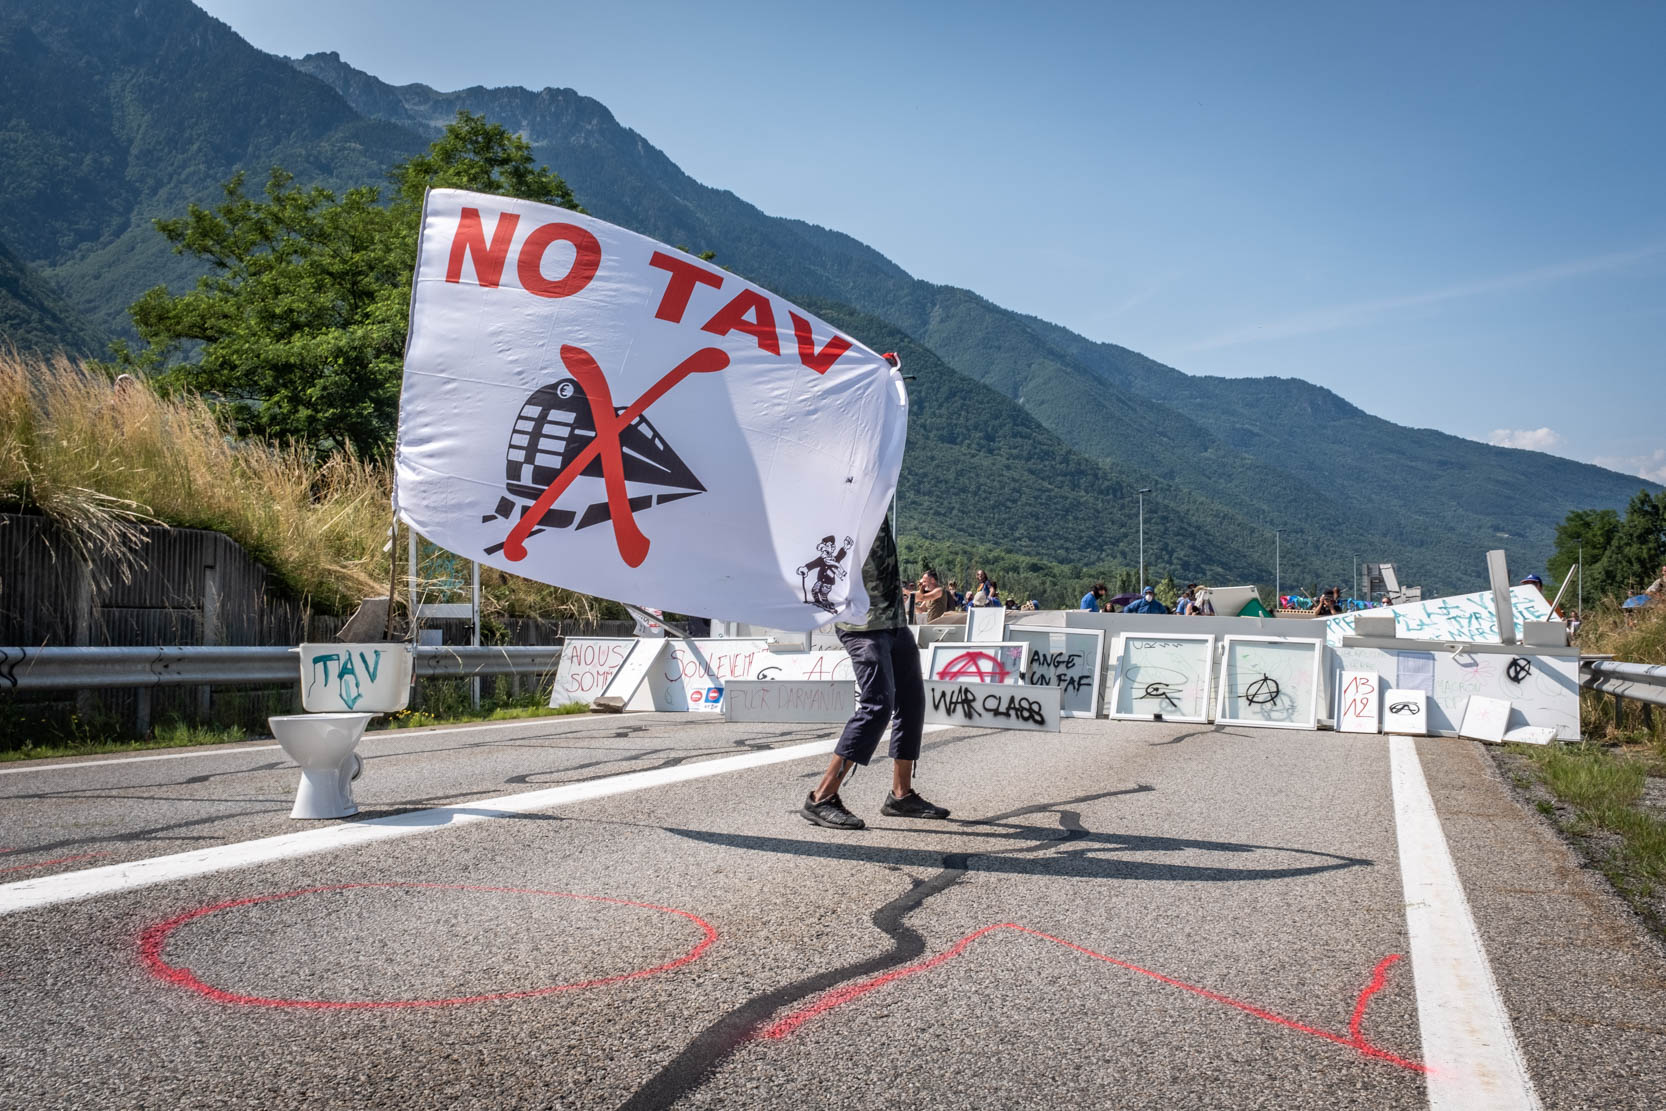 Plus de 4 000 personnes se sont rendues en Savoie contre le Lyon-Turin. Et si l’État n’a pas réussi à empêcher la mobilisation, les manifestants sont amers de ne pas avoir réussi d’action marquante contre les chantiers.